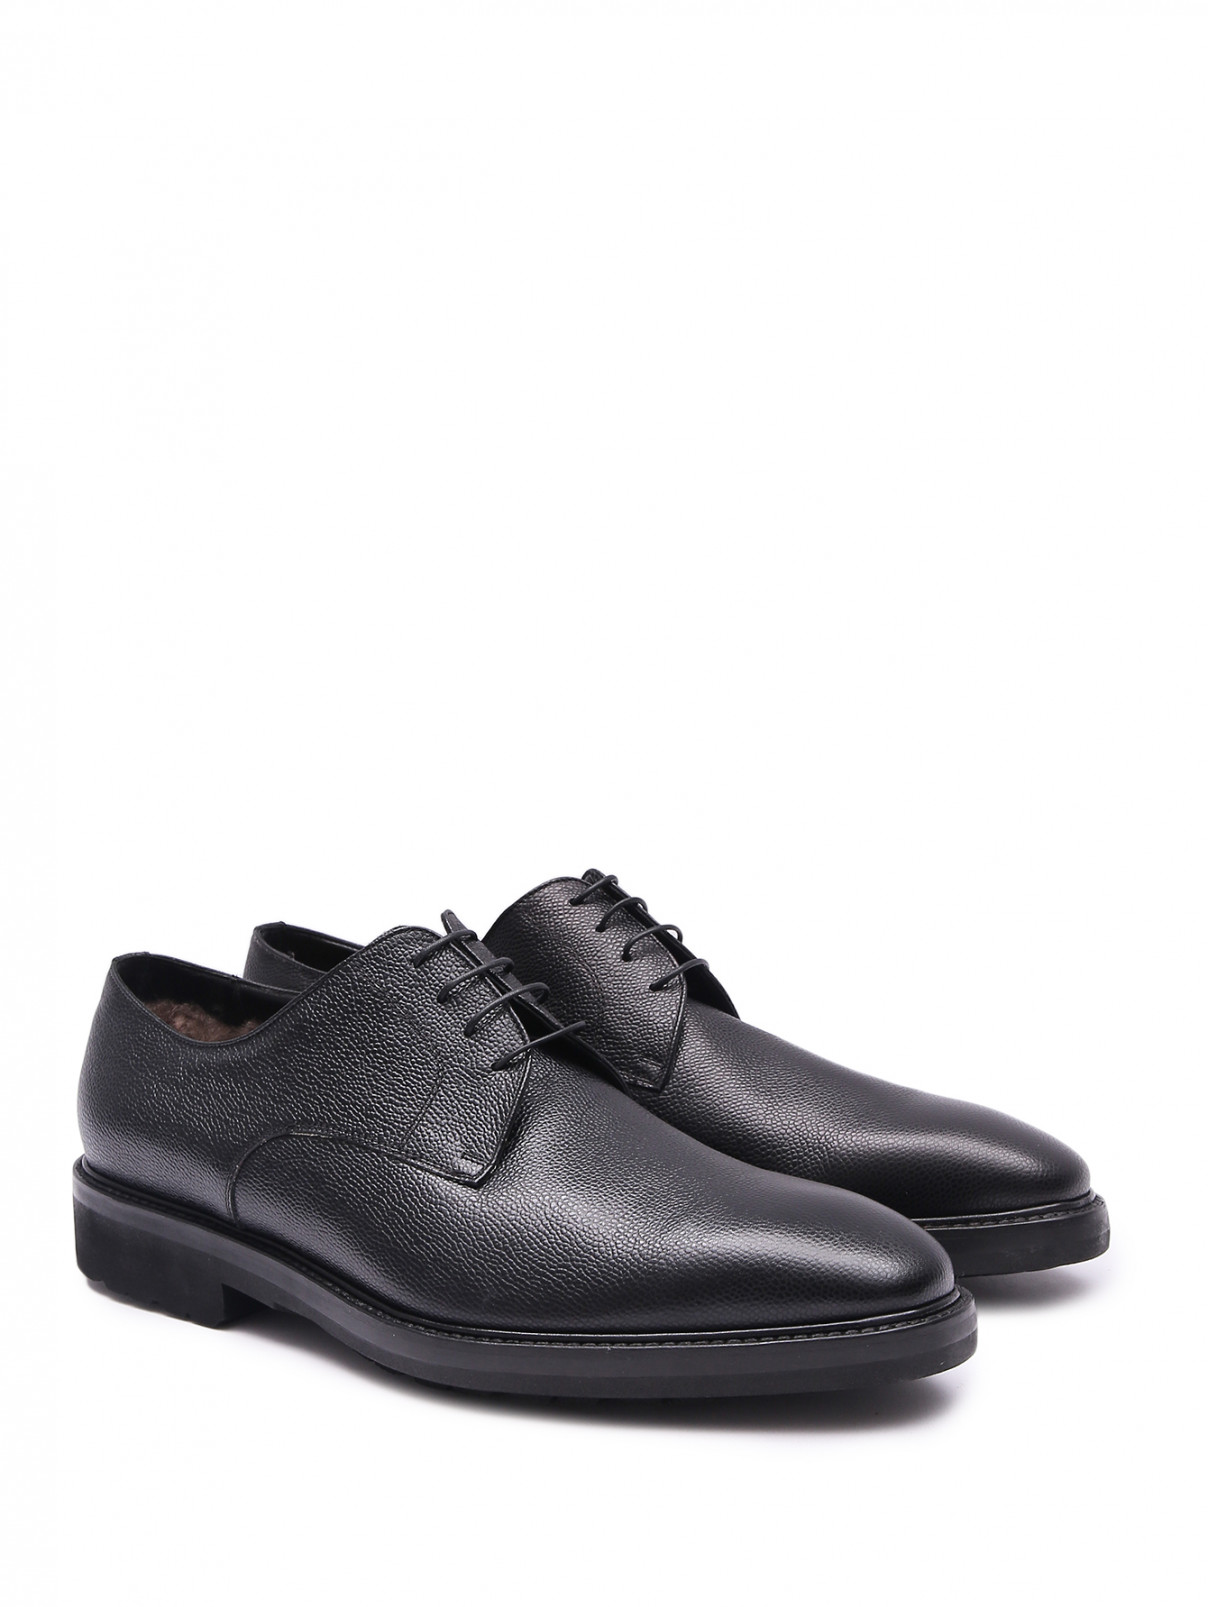 Утепленные туфли из кожи Stemar  –  Общий вид  – Цвет:  Черный